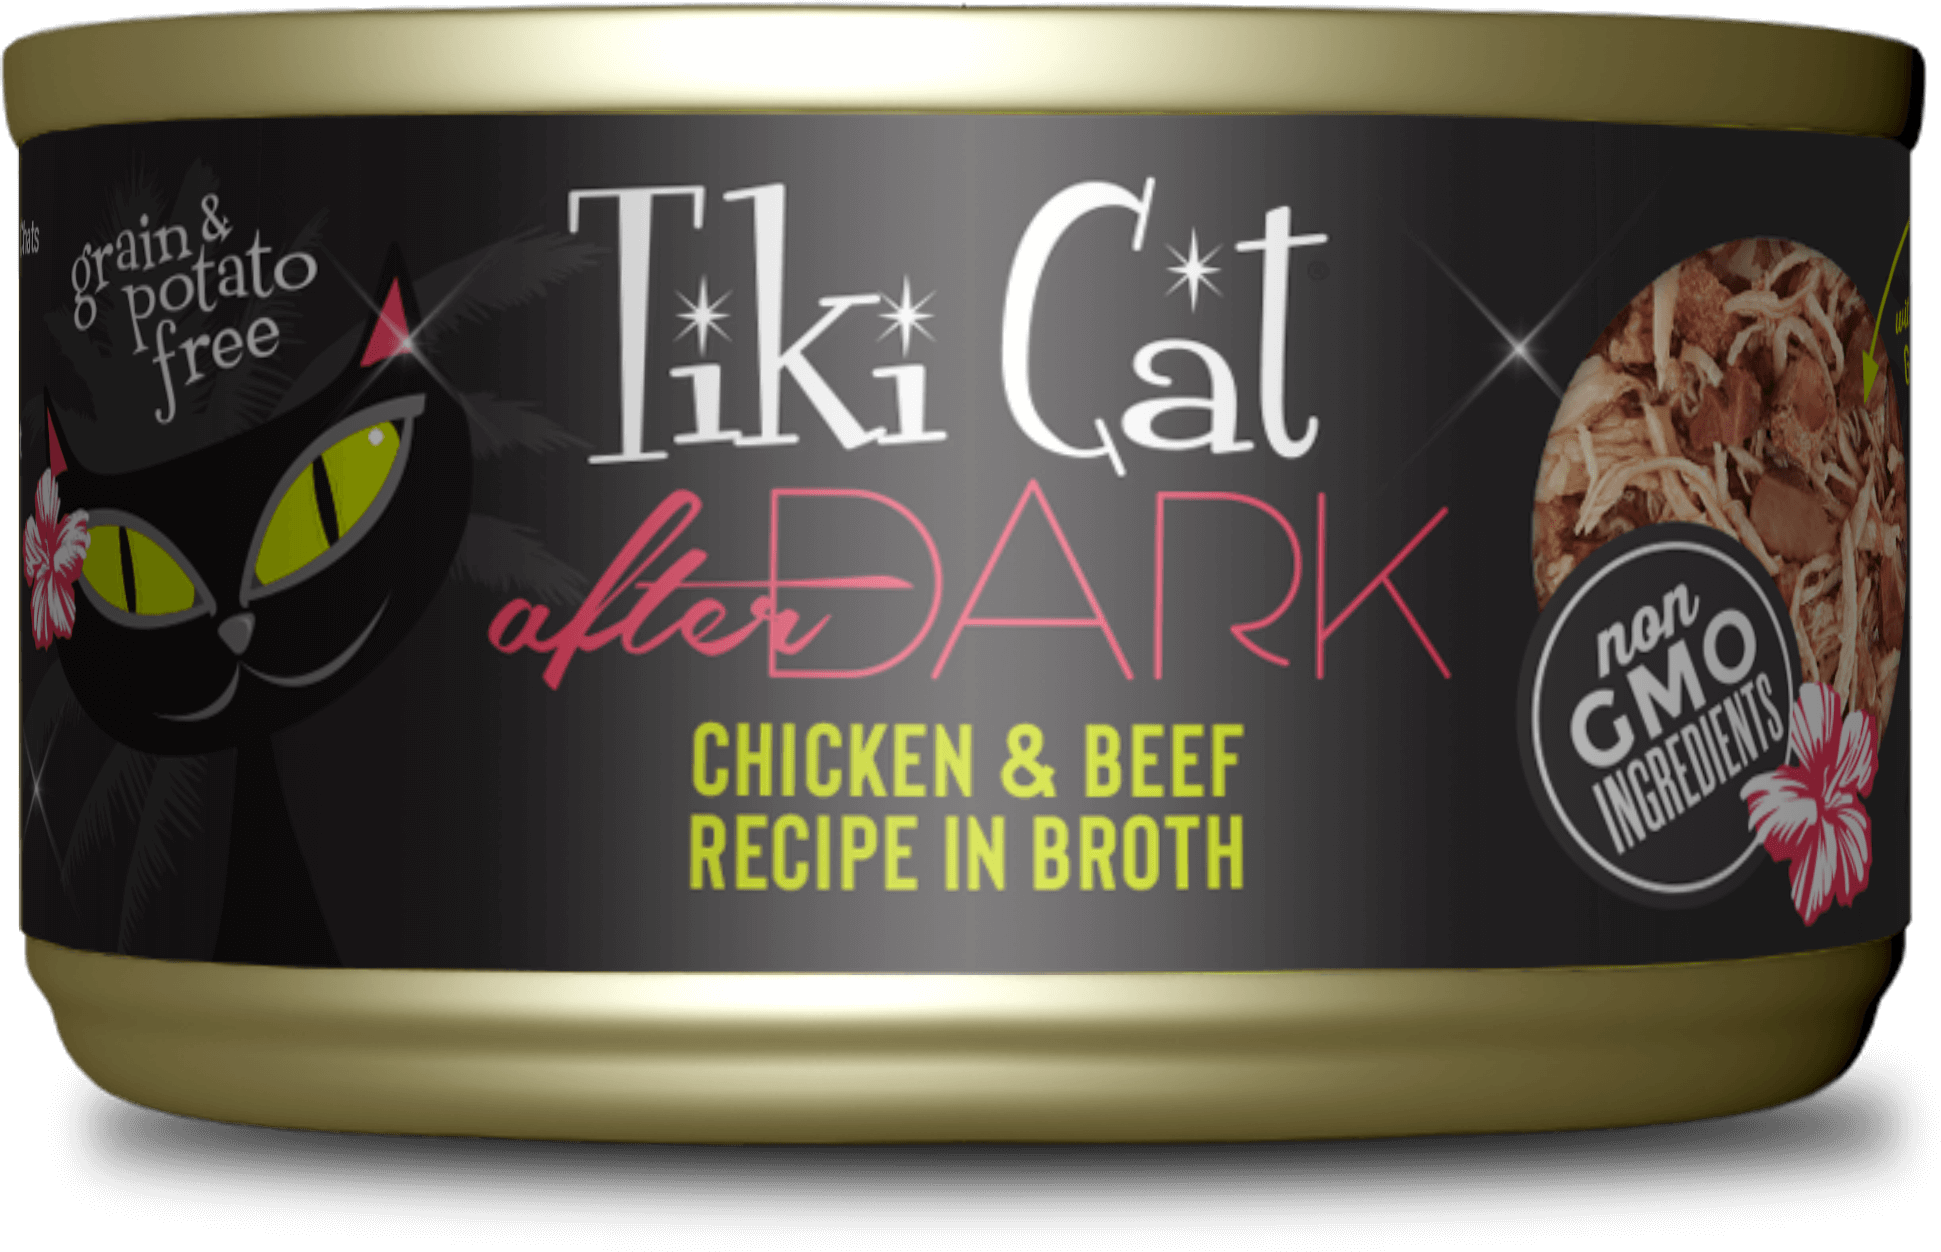 Tiki Cat After Dark Chicken & Beef Recipe In Broth